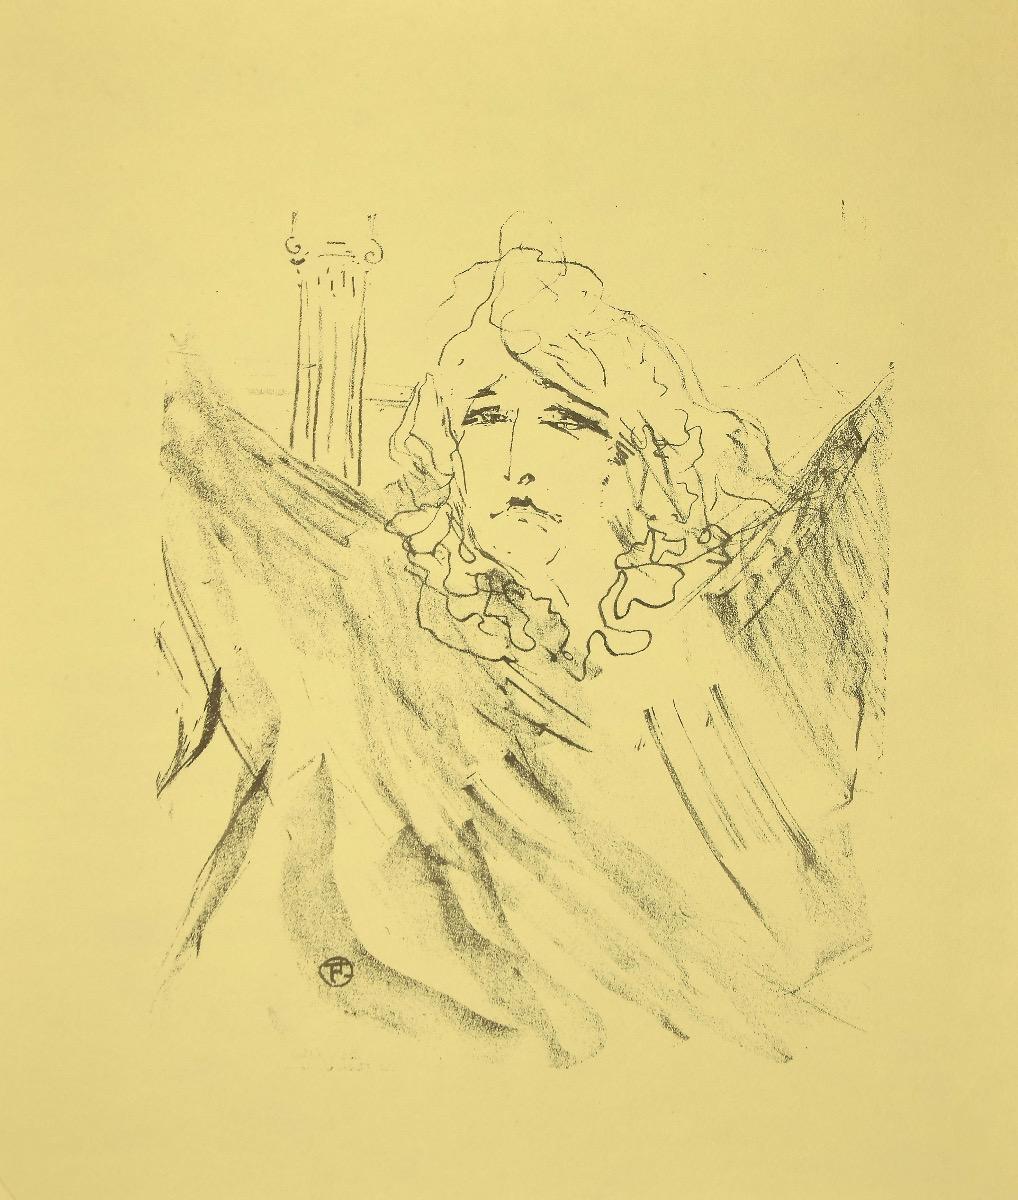 Sarah Bernhardt in "Cléopatre" - Lithograph after H.de Toulouse-Lautrec - 1970s